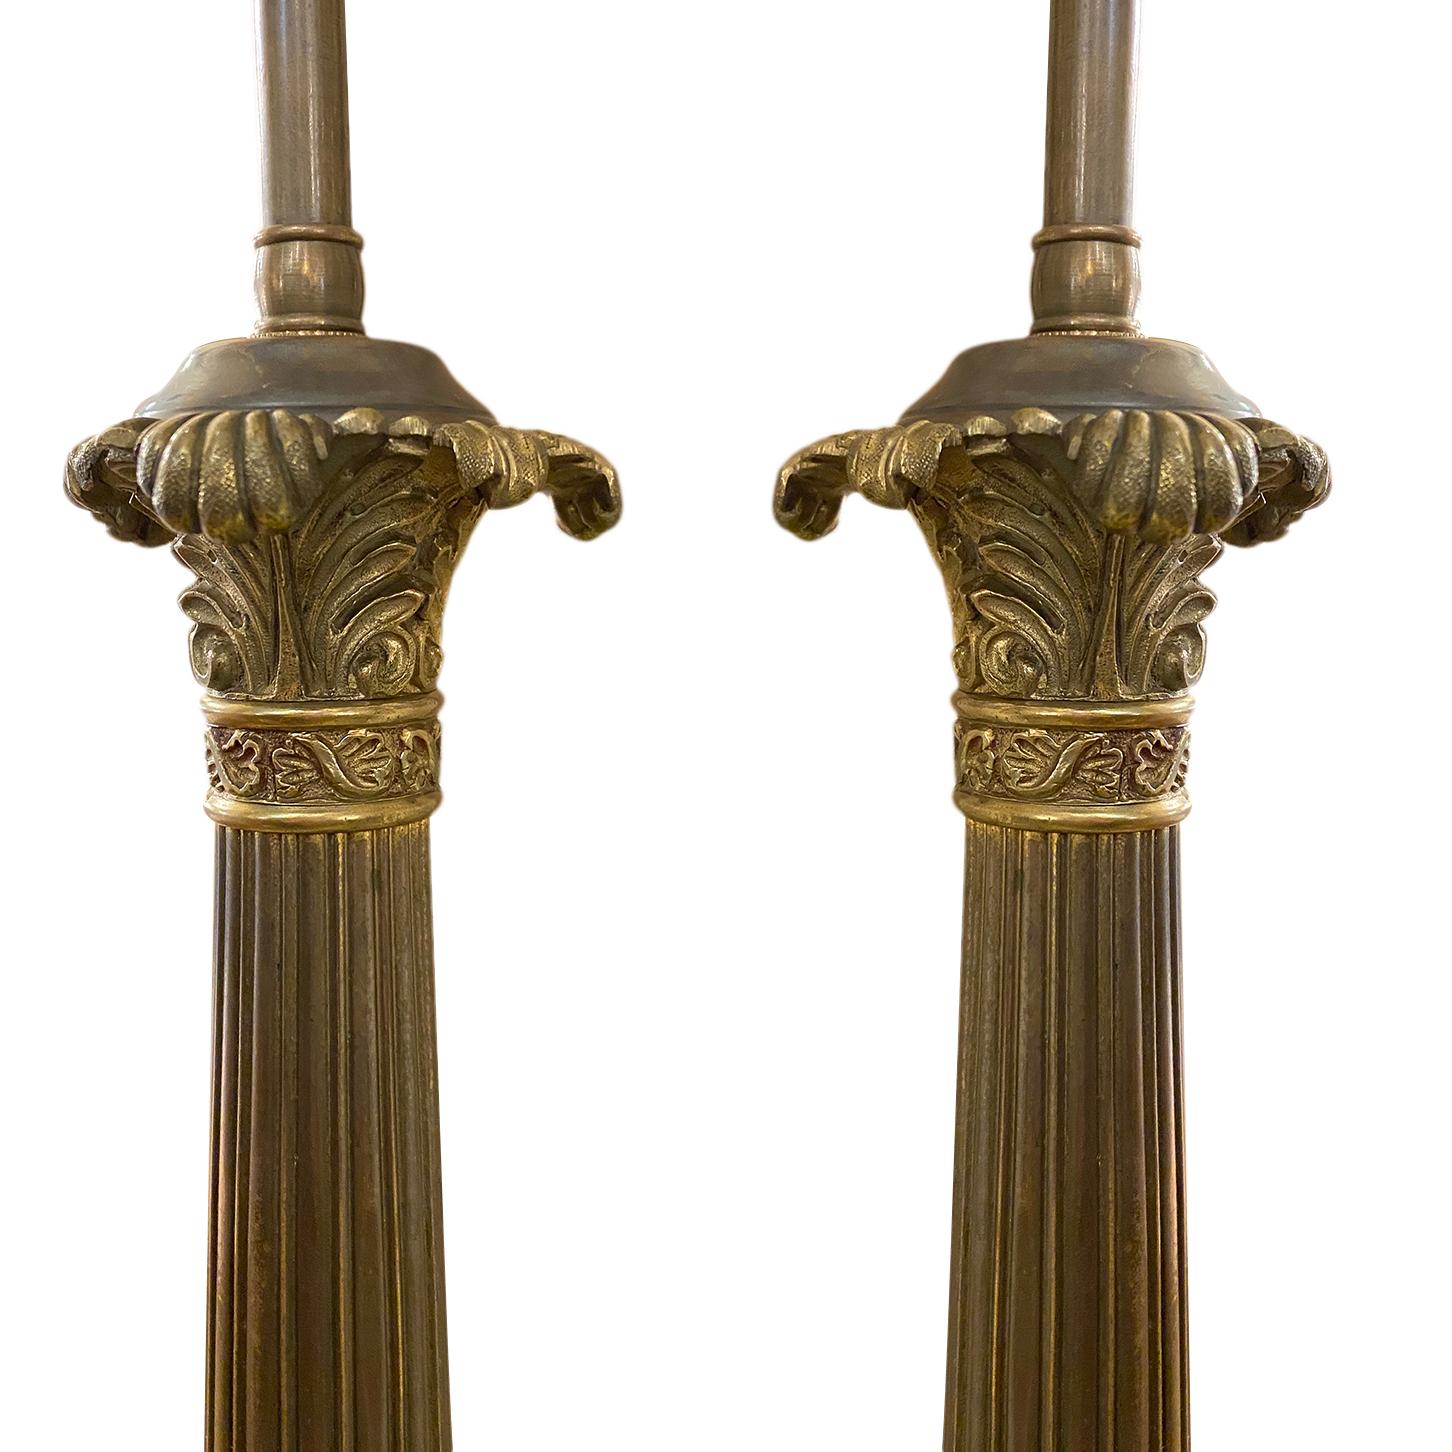 Paire de lampes de table à colonne en bronze de style Empire français, datant d'environ 1900, avec patine d'origine.

Mesures :
Hauteur du corps 18
Hauteur jusqu'à l'appui de l'abat-jour 26,5 pouces
Largeur à la base 6.5